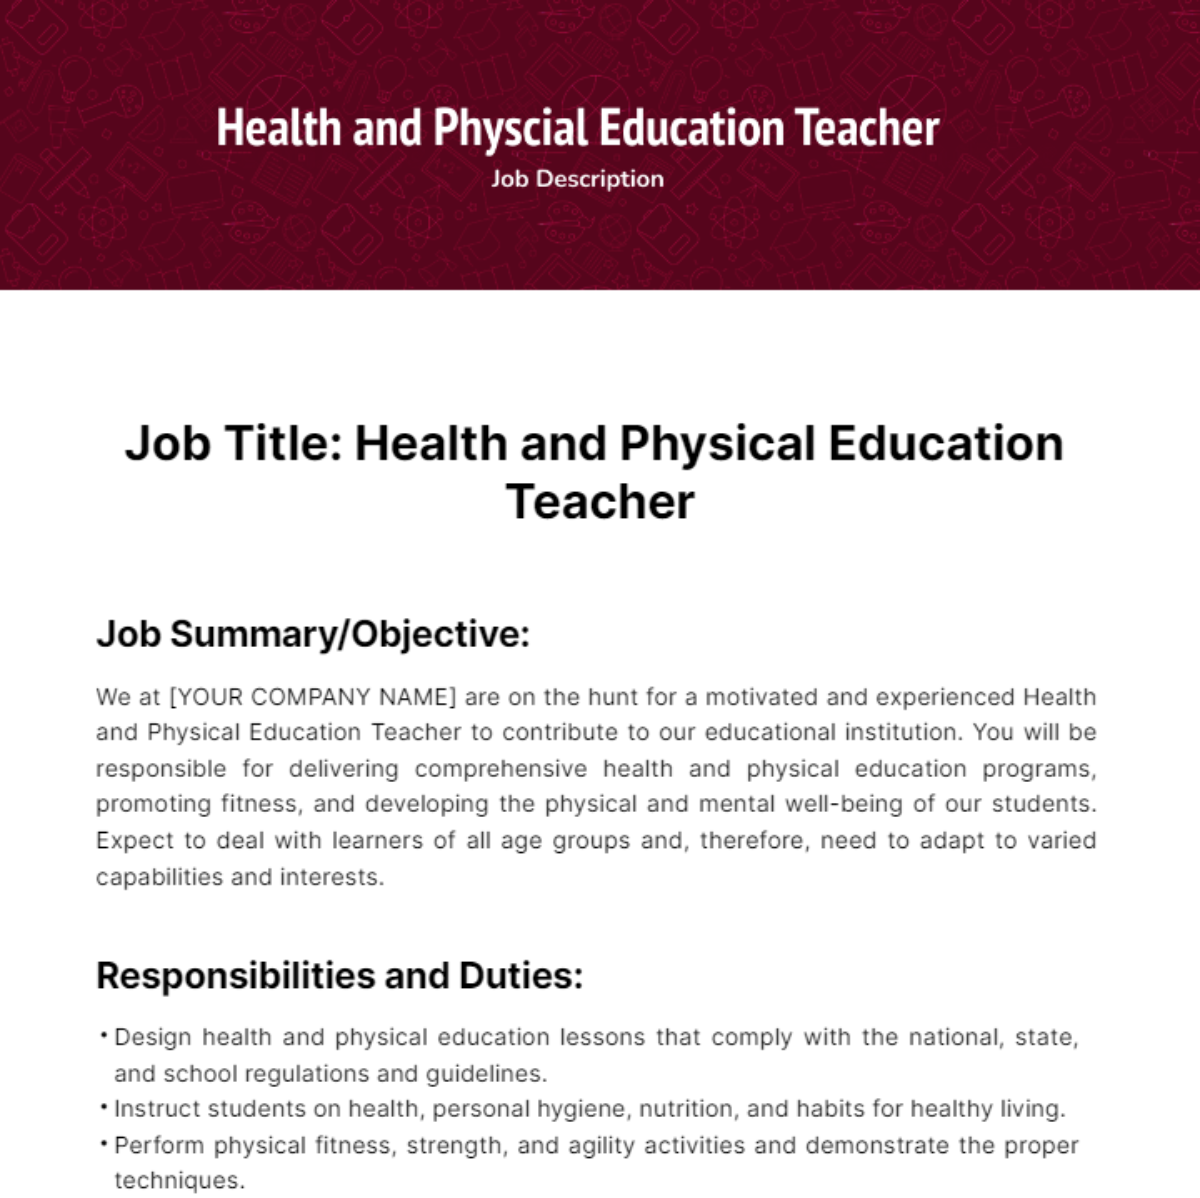 Health and Physical Education Teacher Job Description Template